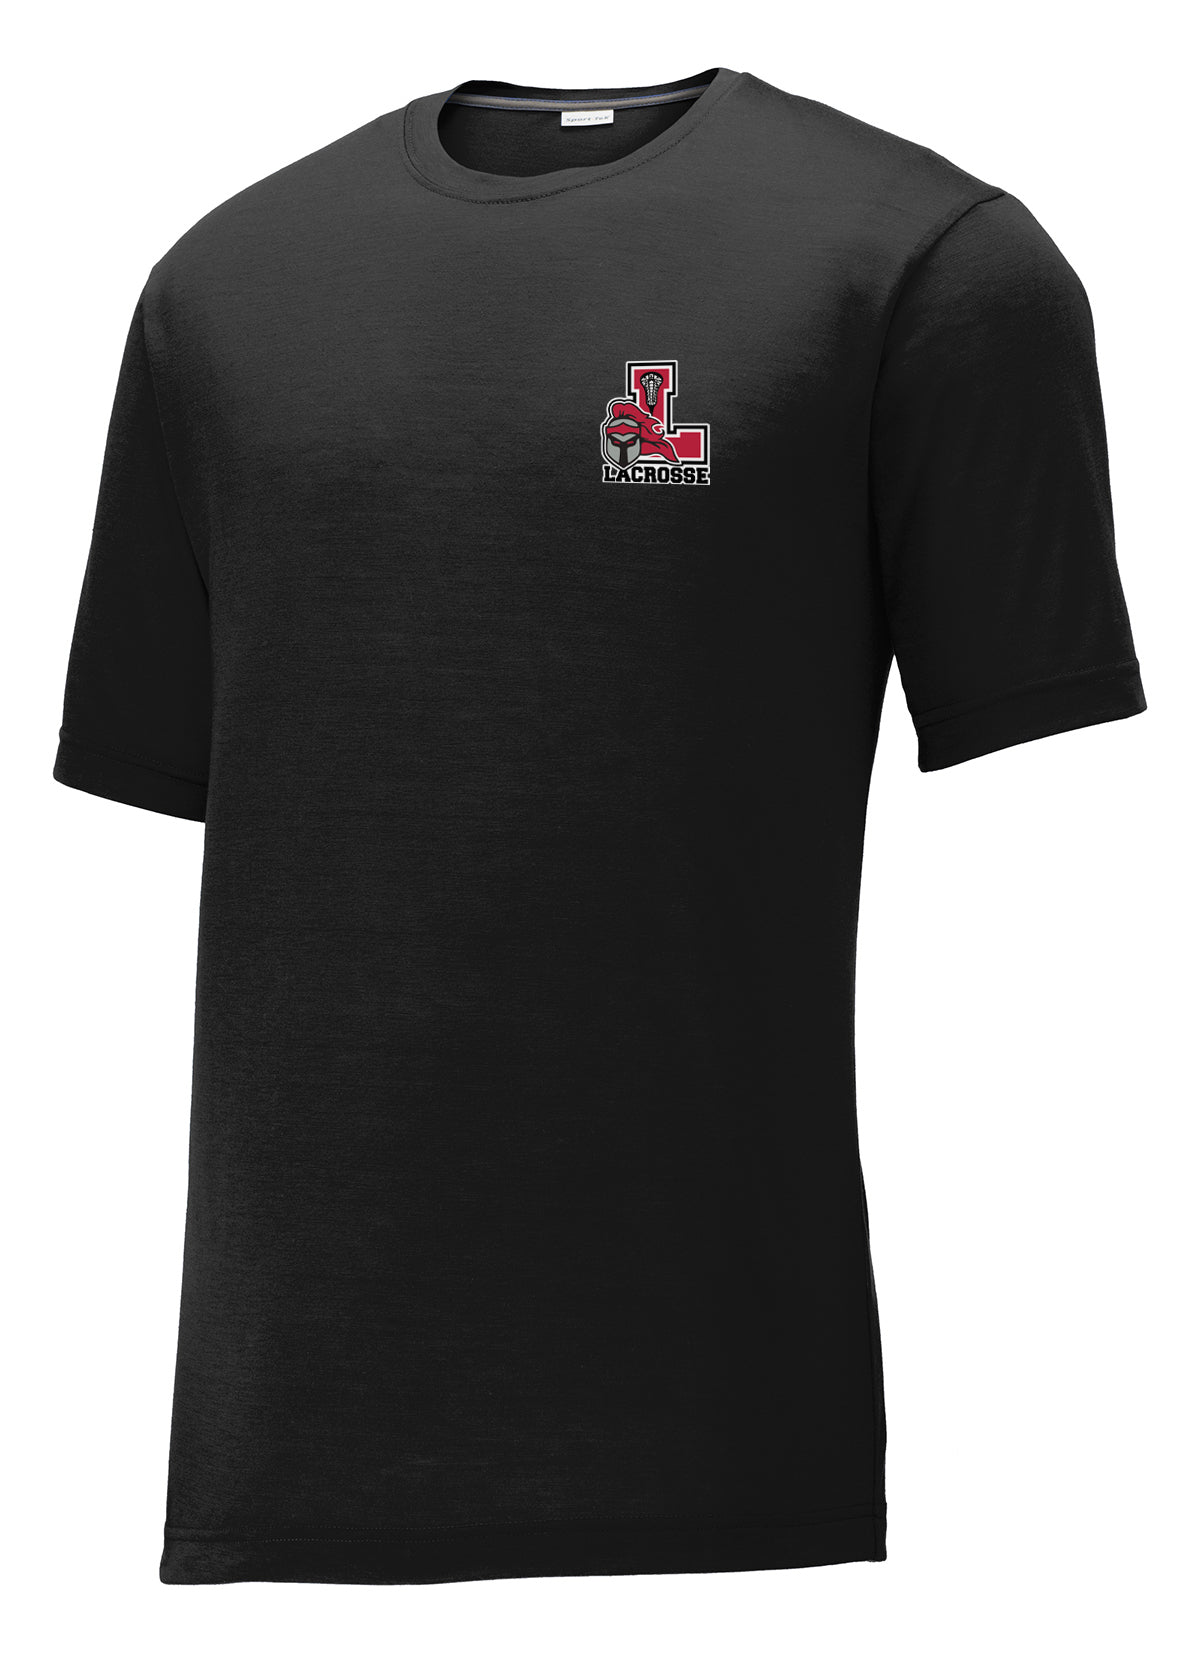 Lancaster Legends Lacrosse Black CottonTouch Performance T-Shirt